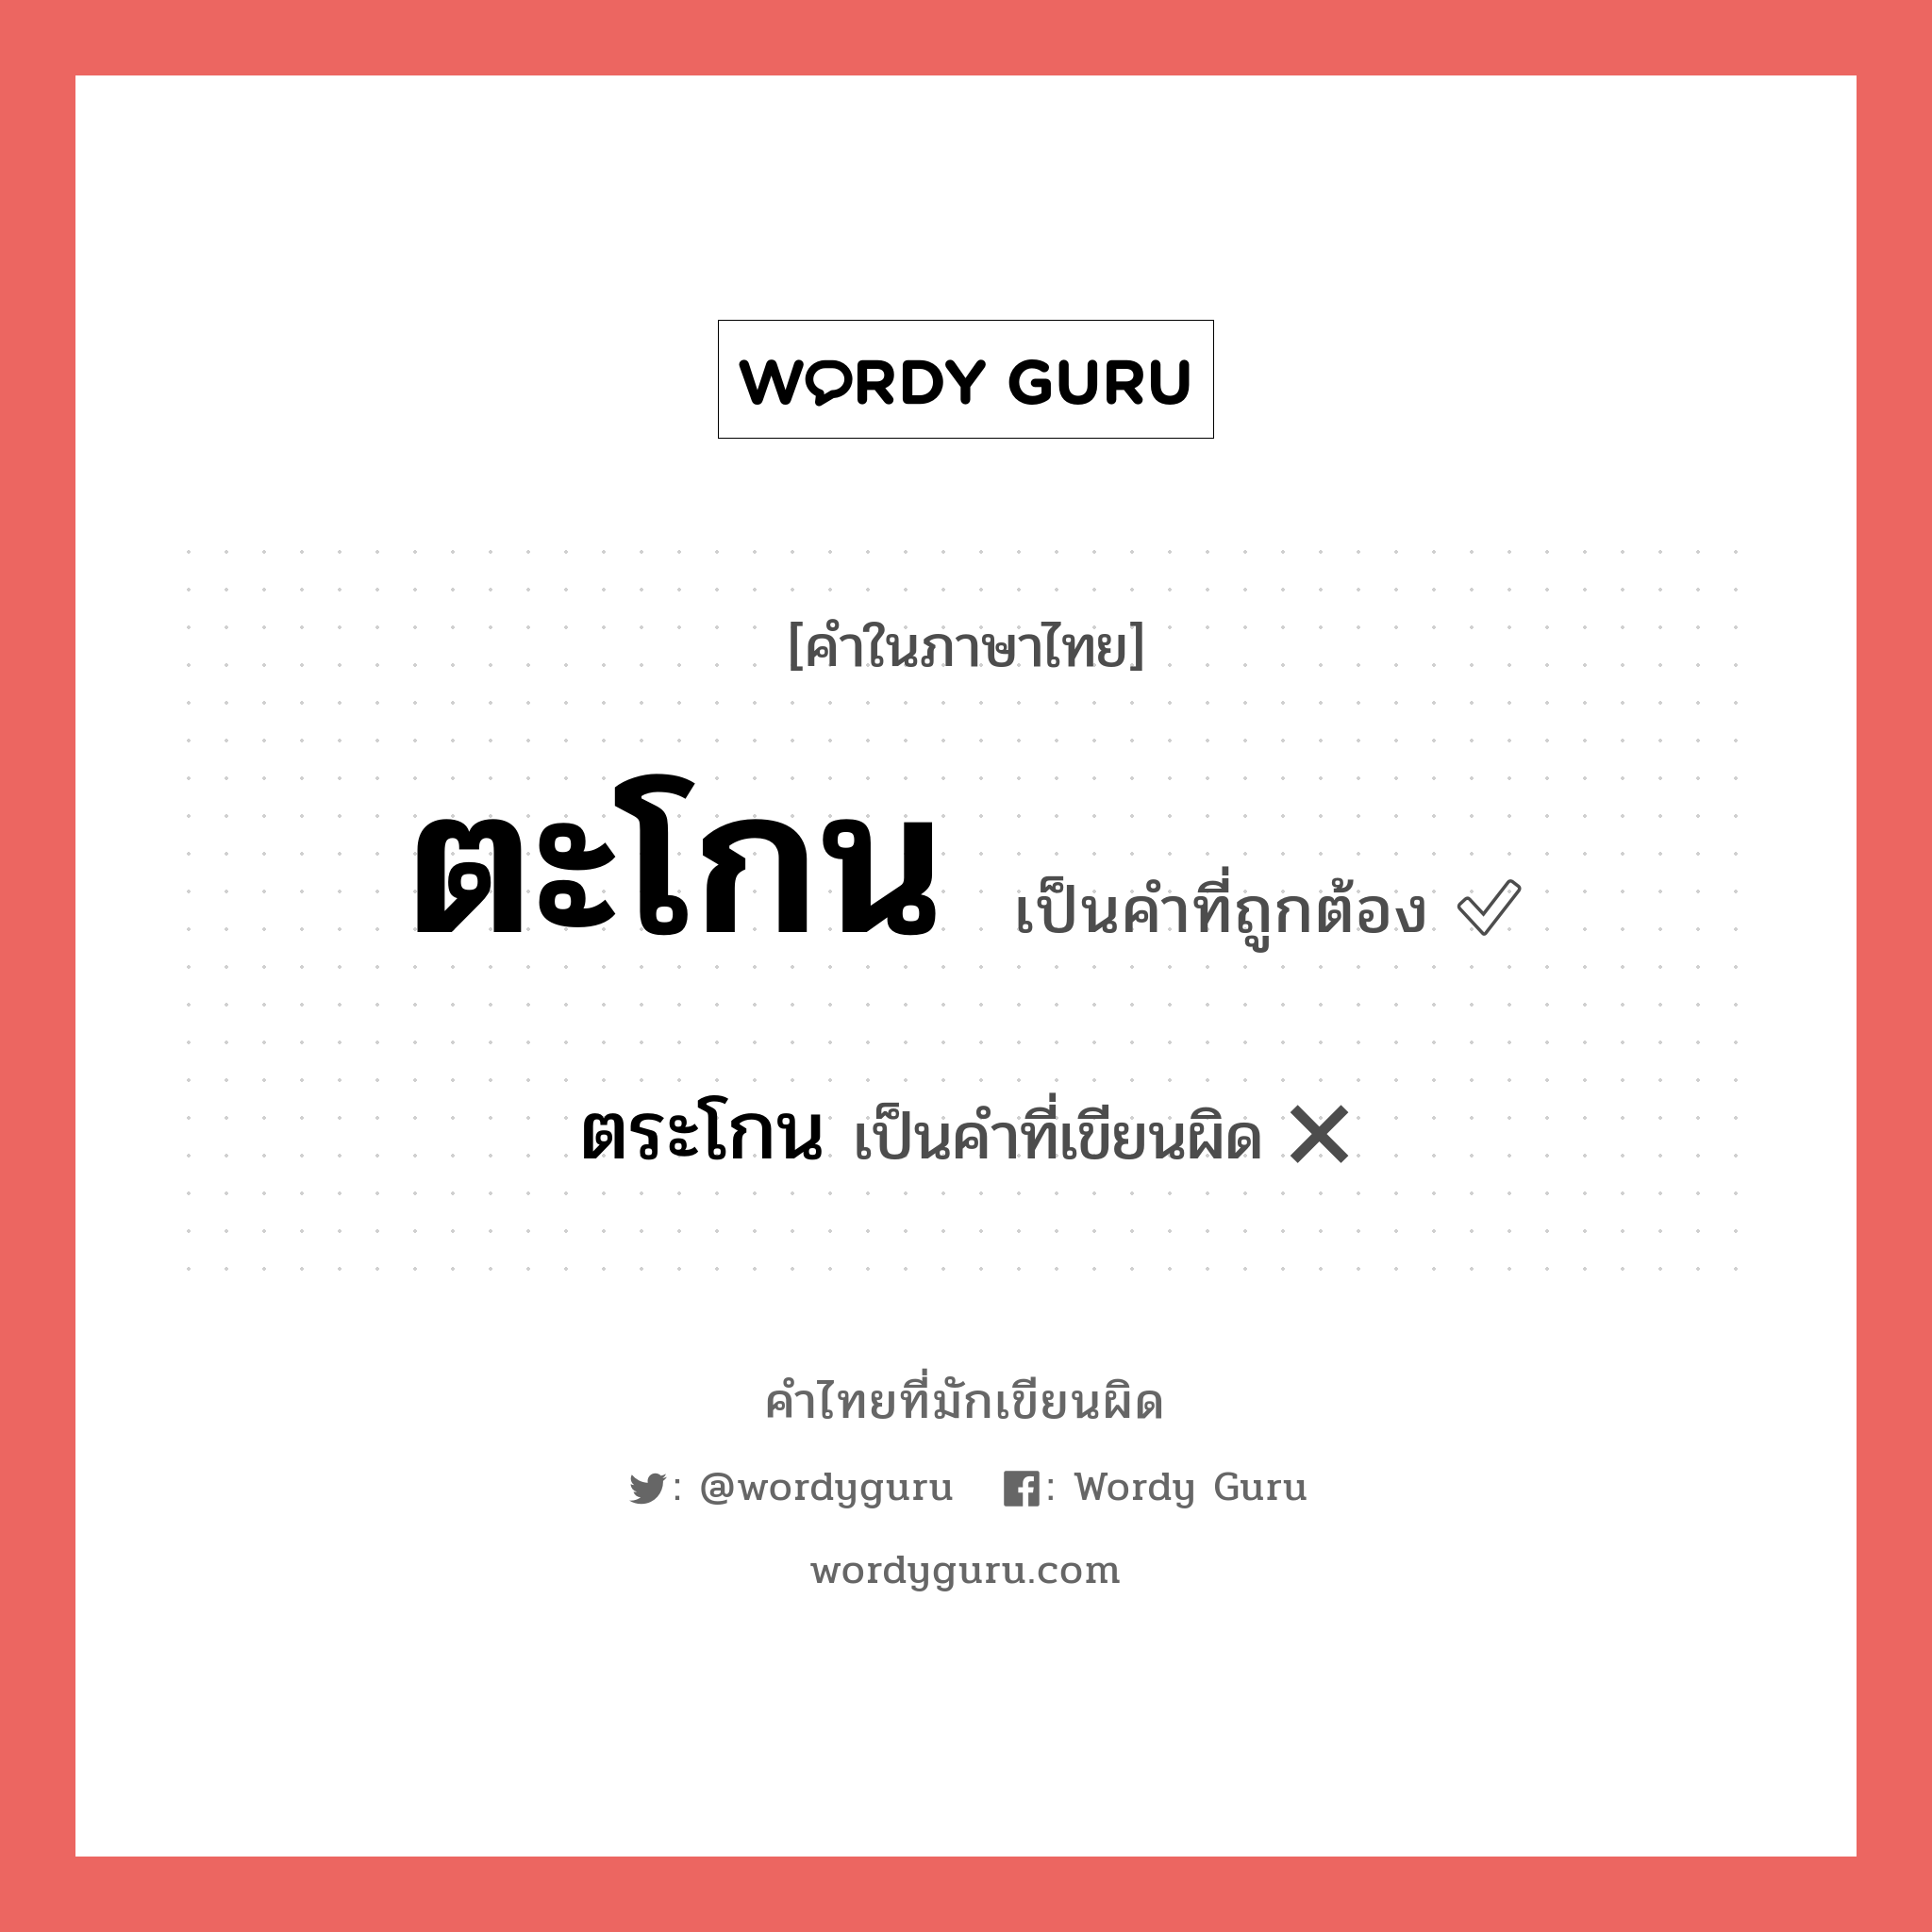 ตะโกน หรือ ตระโกน เขียนยังไง? คำไหนเขียนถูก?, คำในภาษาไทยที่มักเขียนผิด ตะโกน คำที่ผิด ❌ ตระโกน